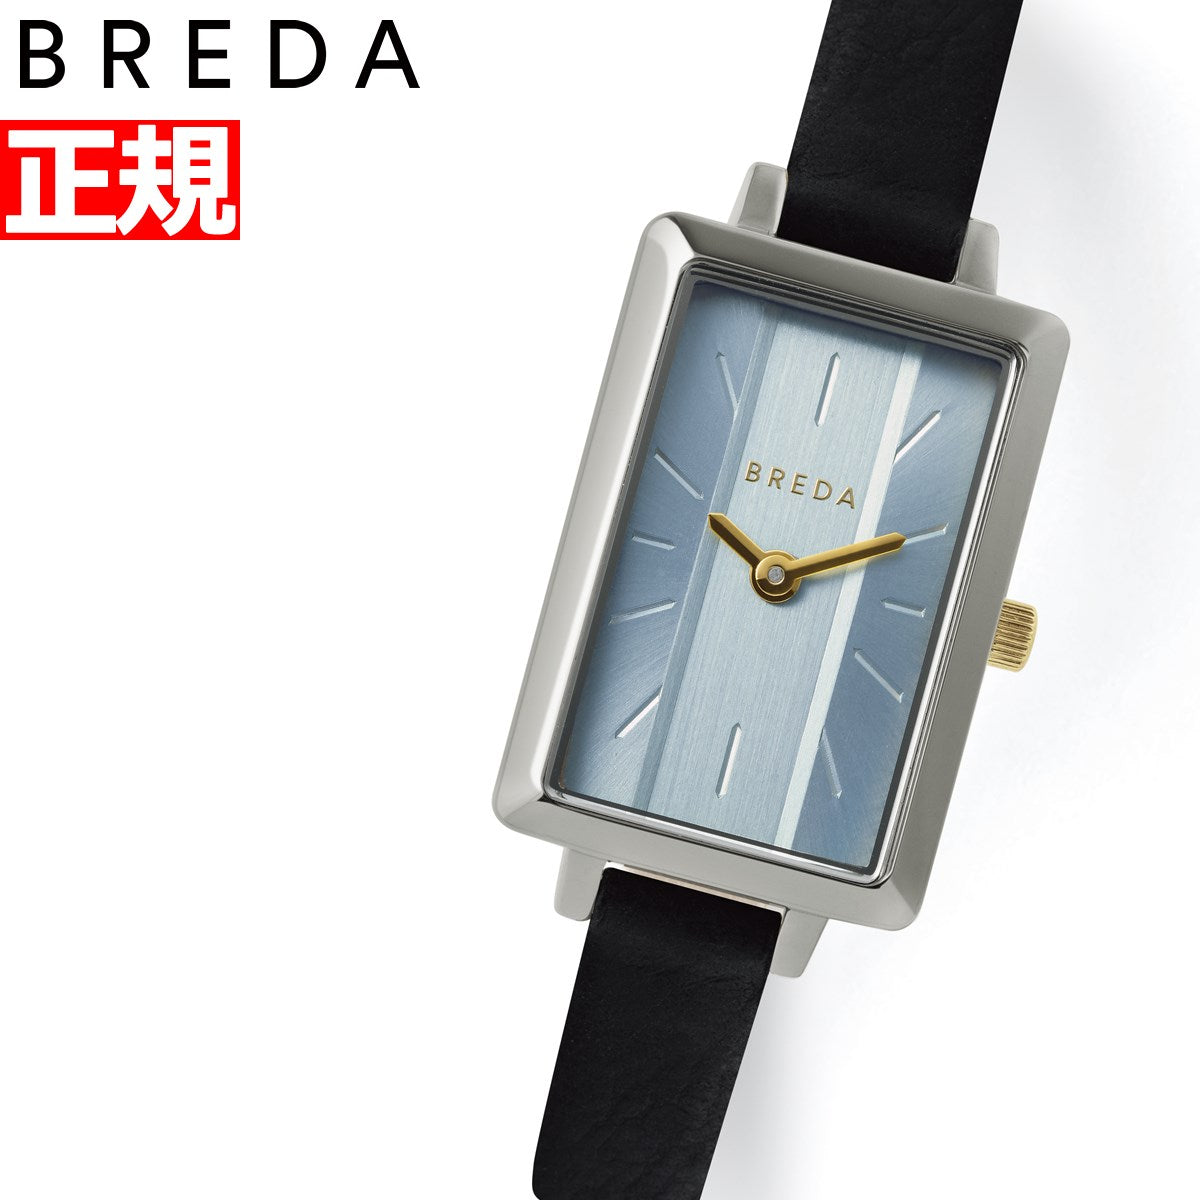 ブレダ エヴァ 腕時計 レディース 1738-set-b 日本限定モデル BREDA